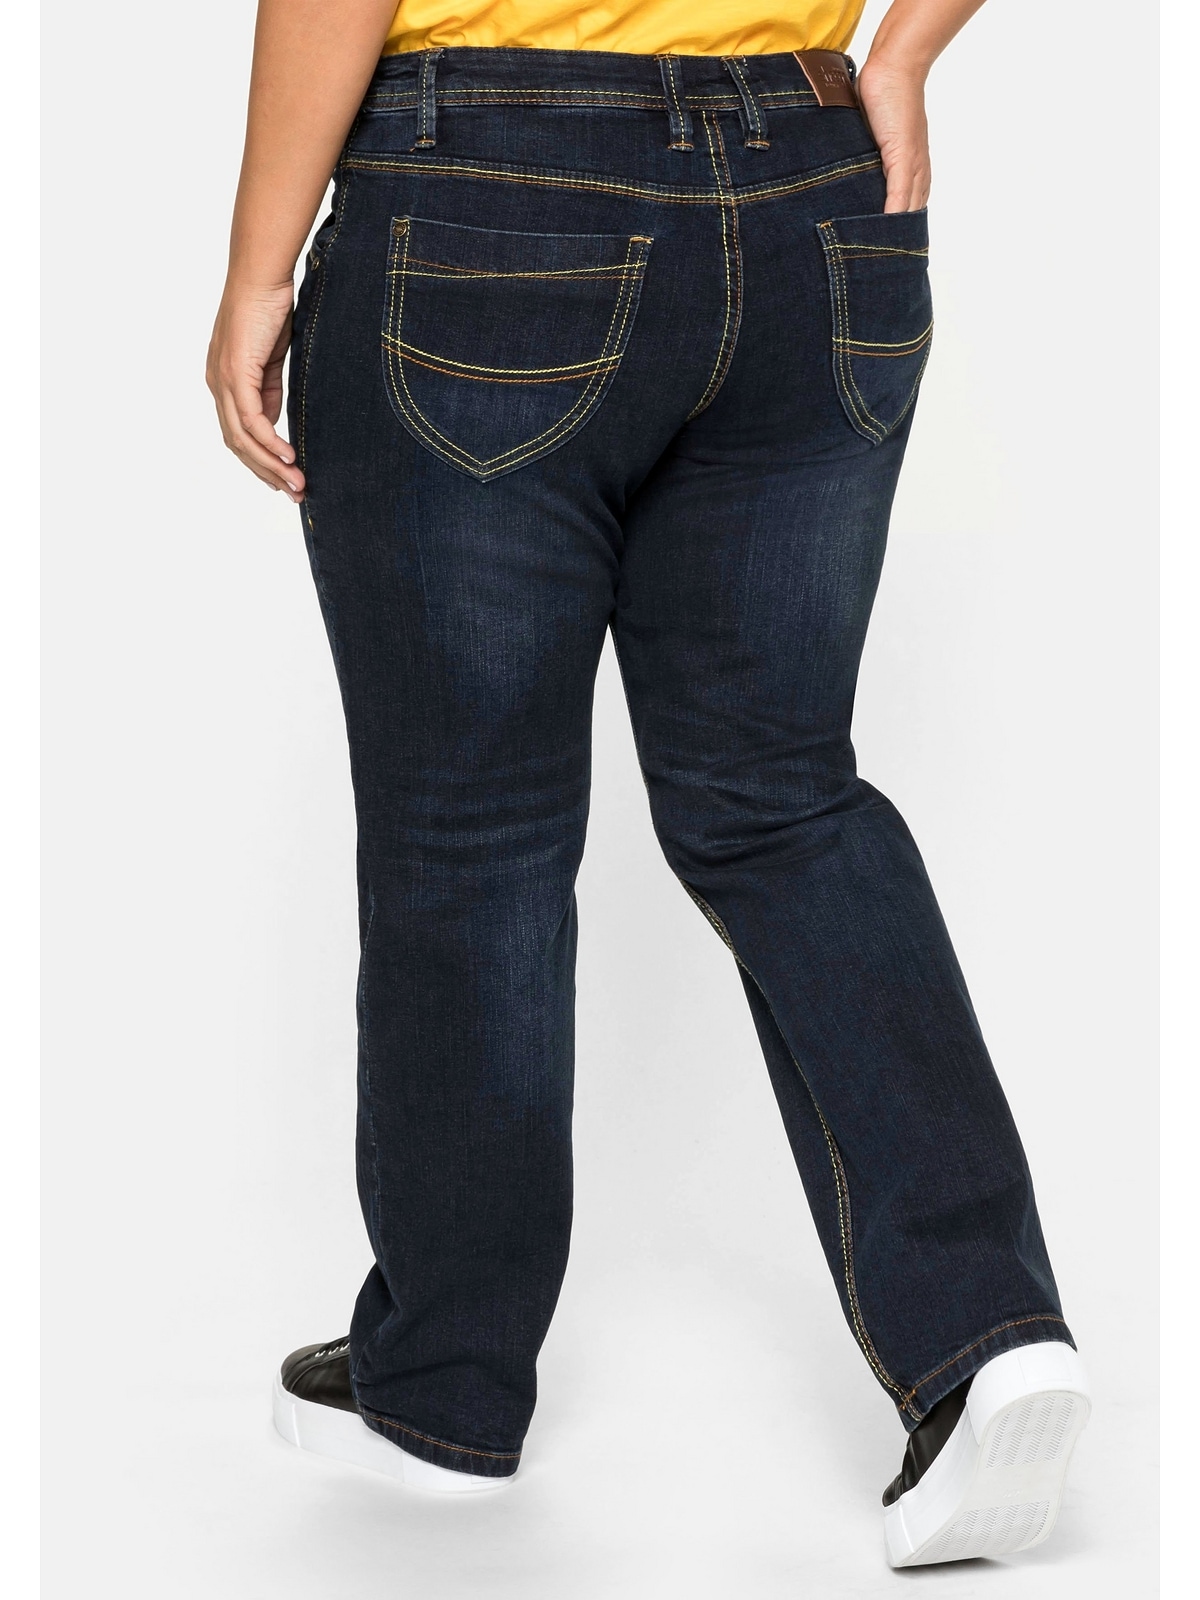 Sheego Stretch-Jeans »Große Größen« su gerade...